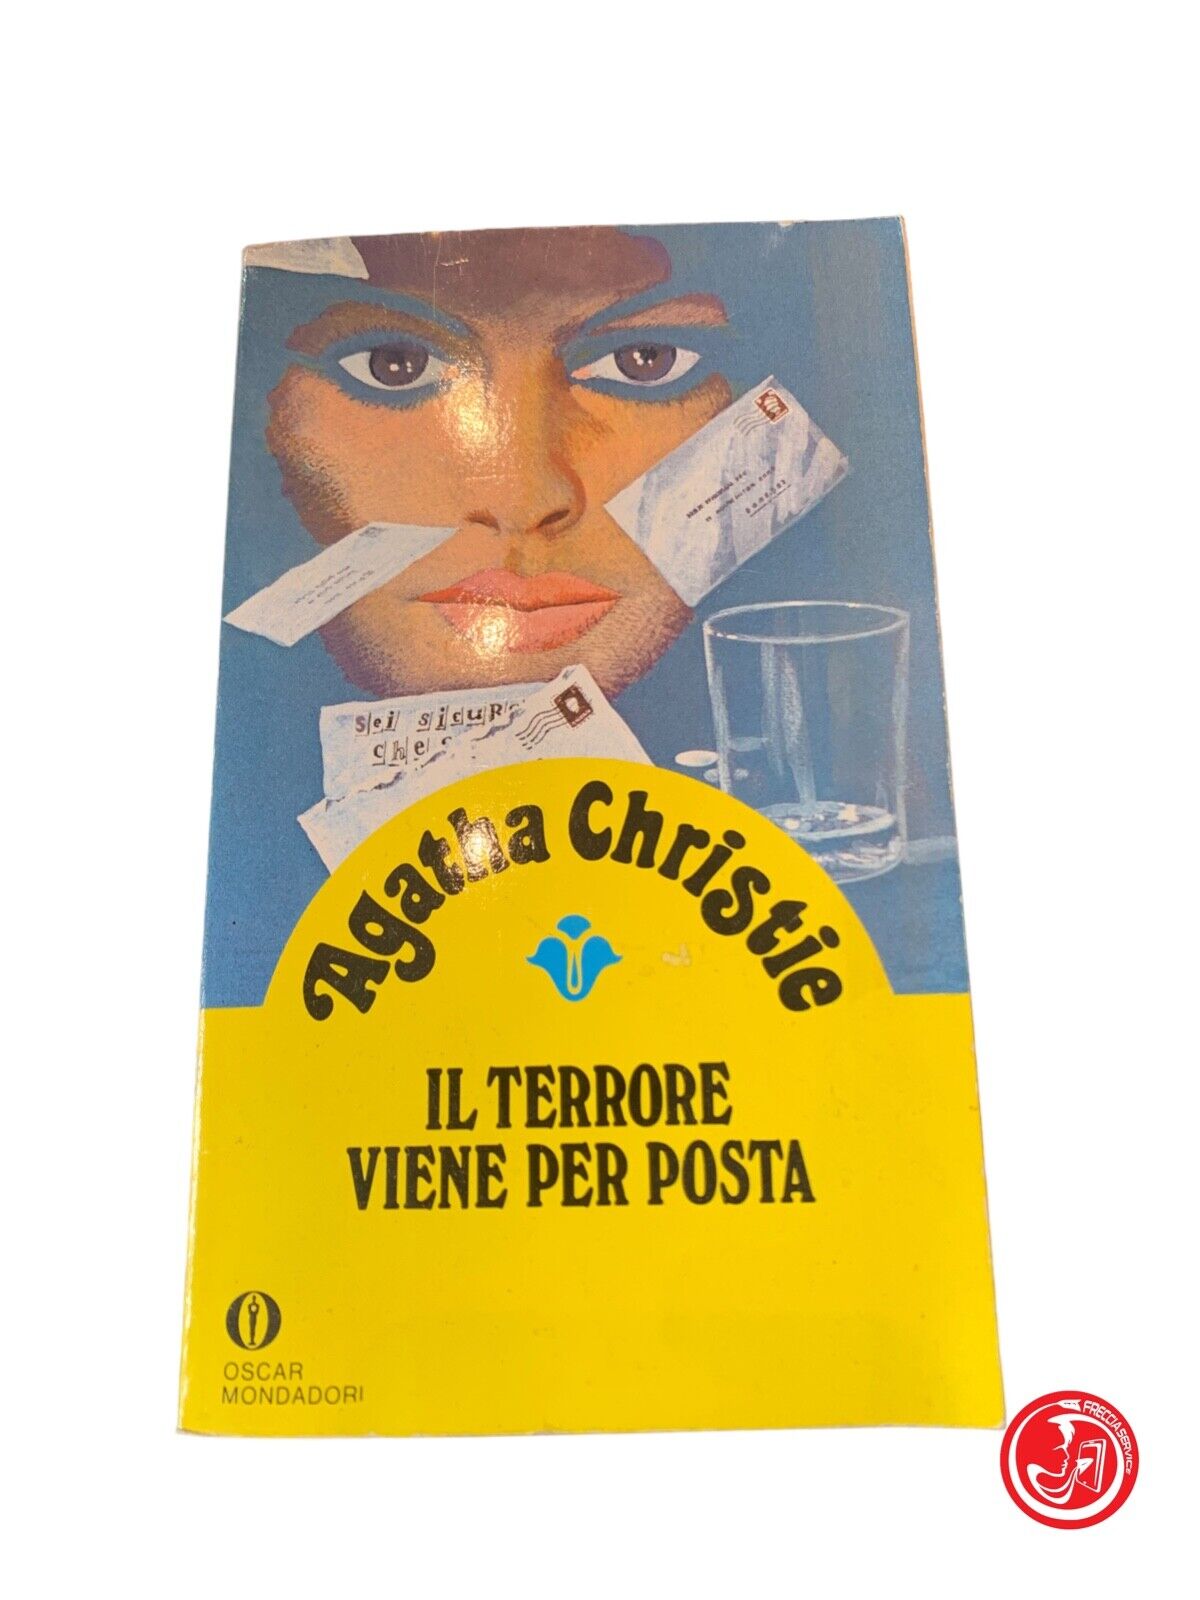 Il terrore viene per posta - Agatha Christie - Oscar Mondadori 1994